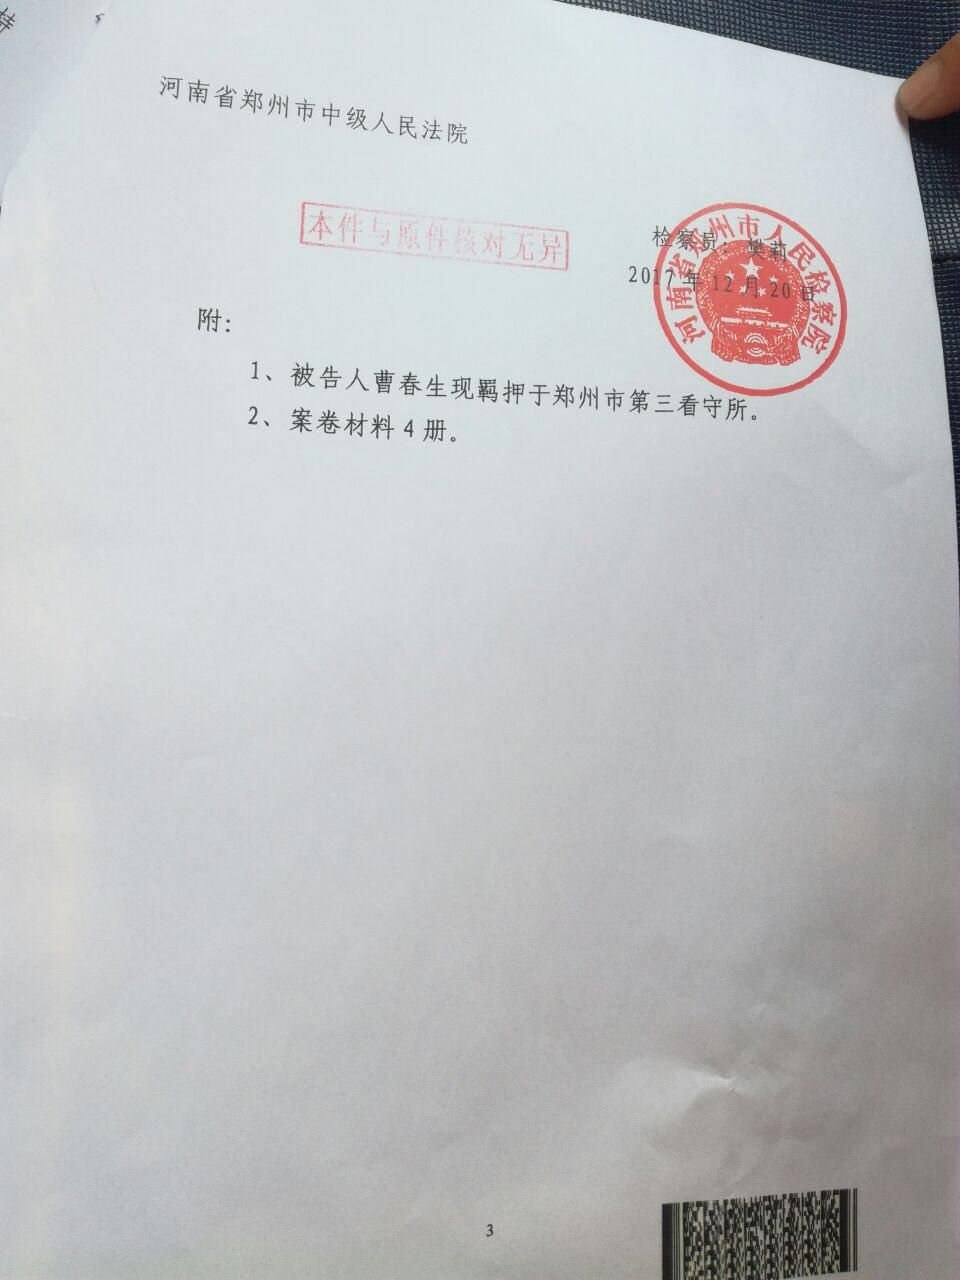 郑州抗强拆杀匪英雄曹春生已被检察院起诉到法院